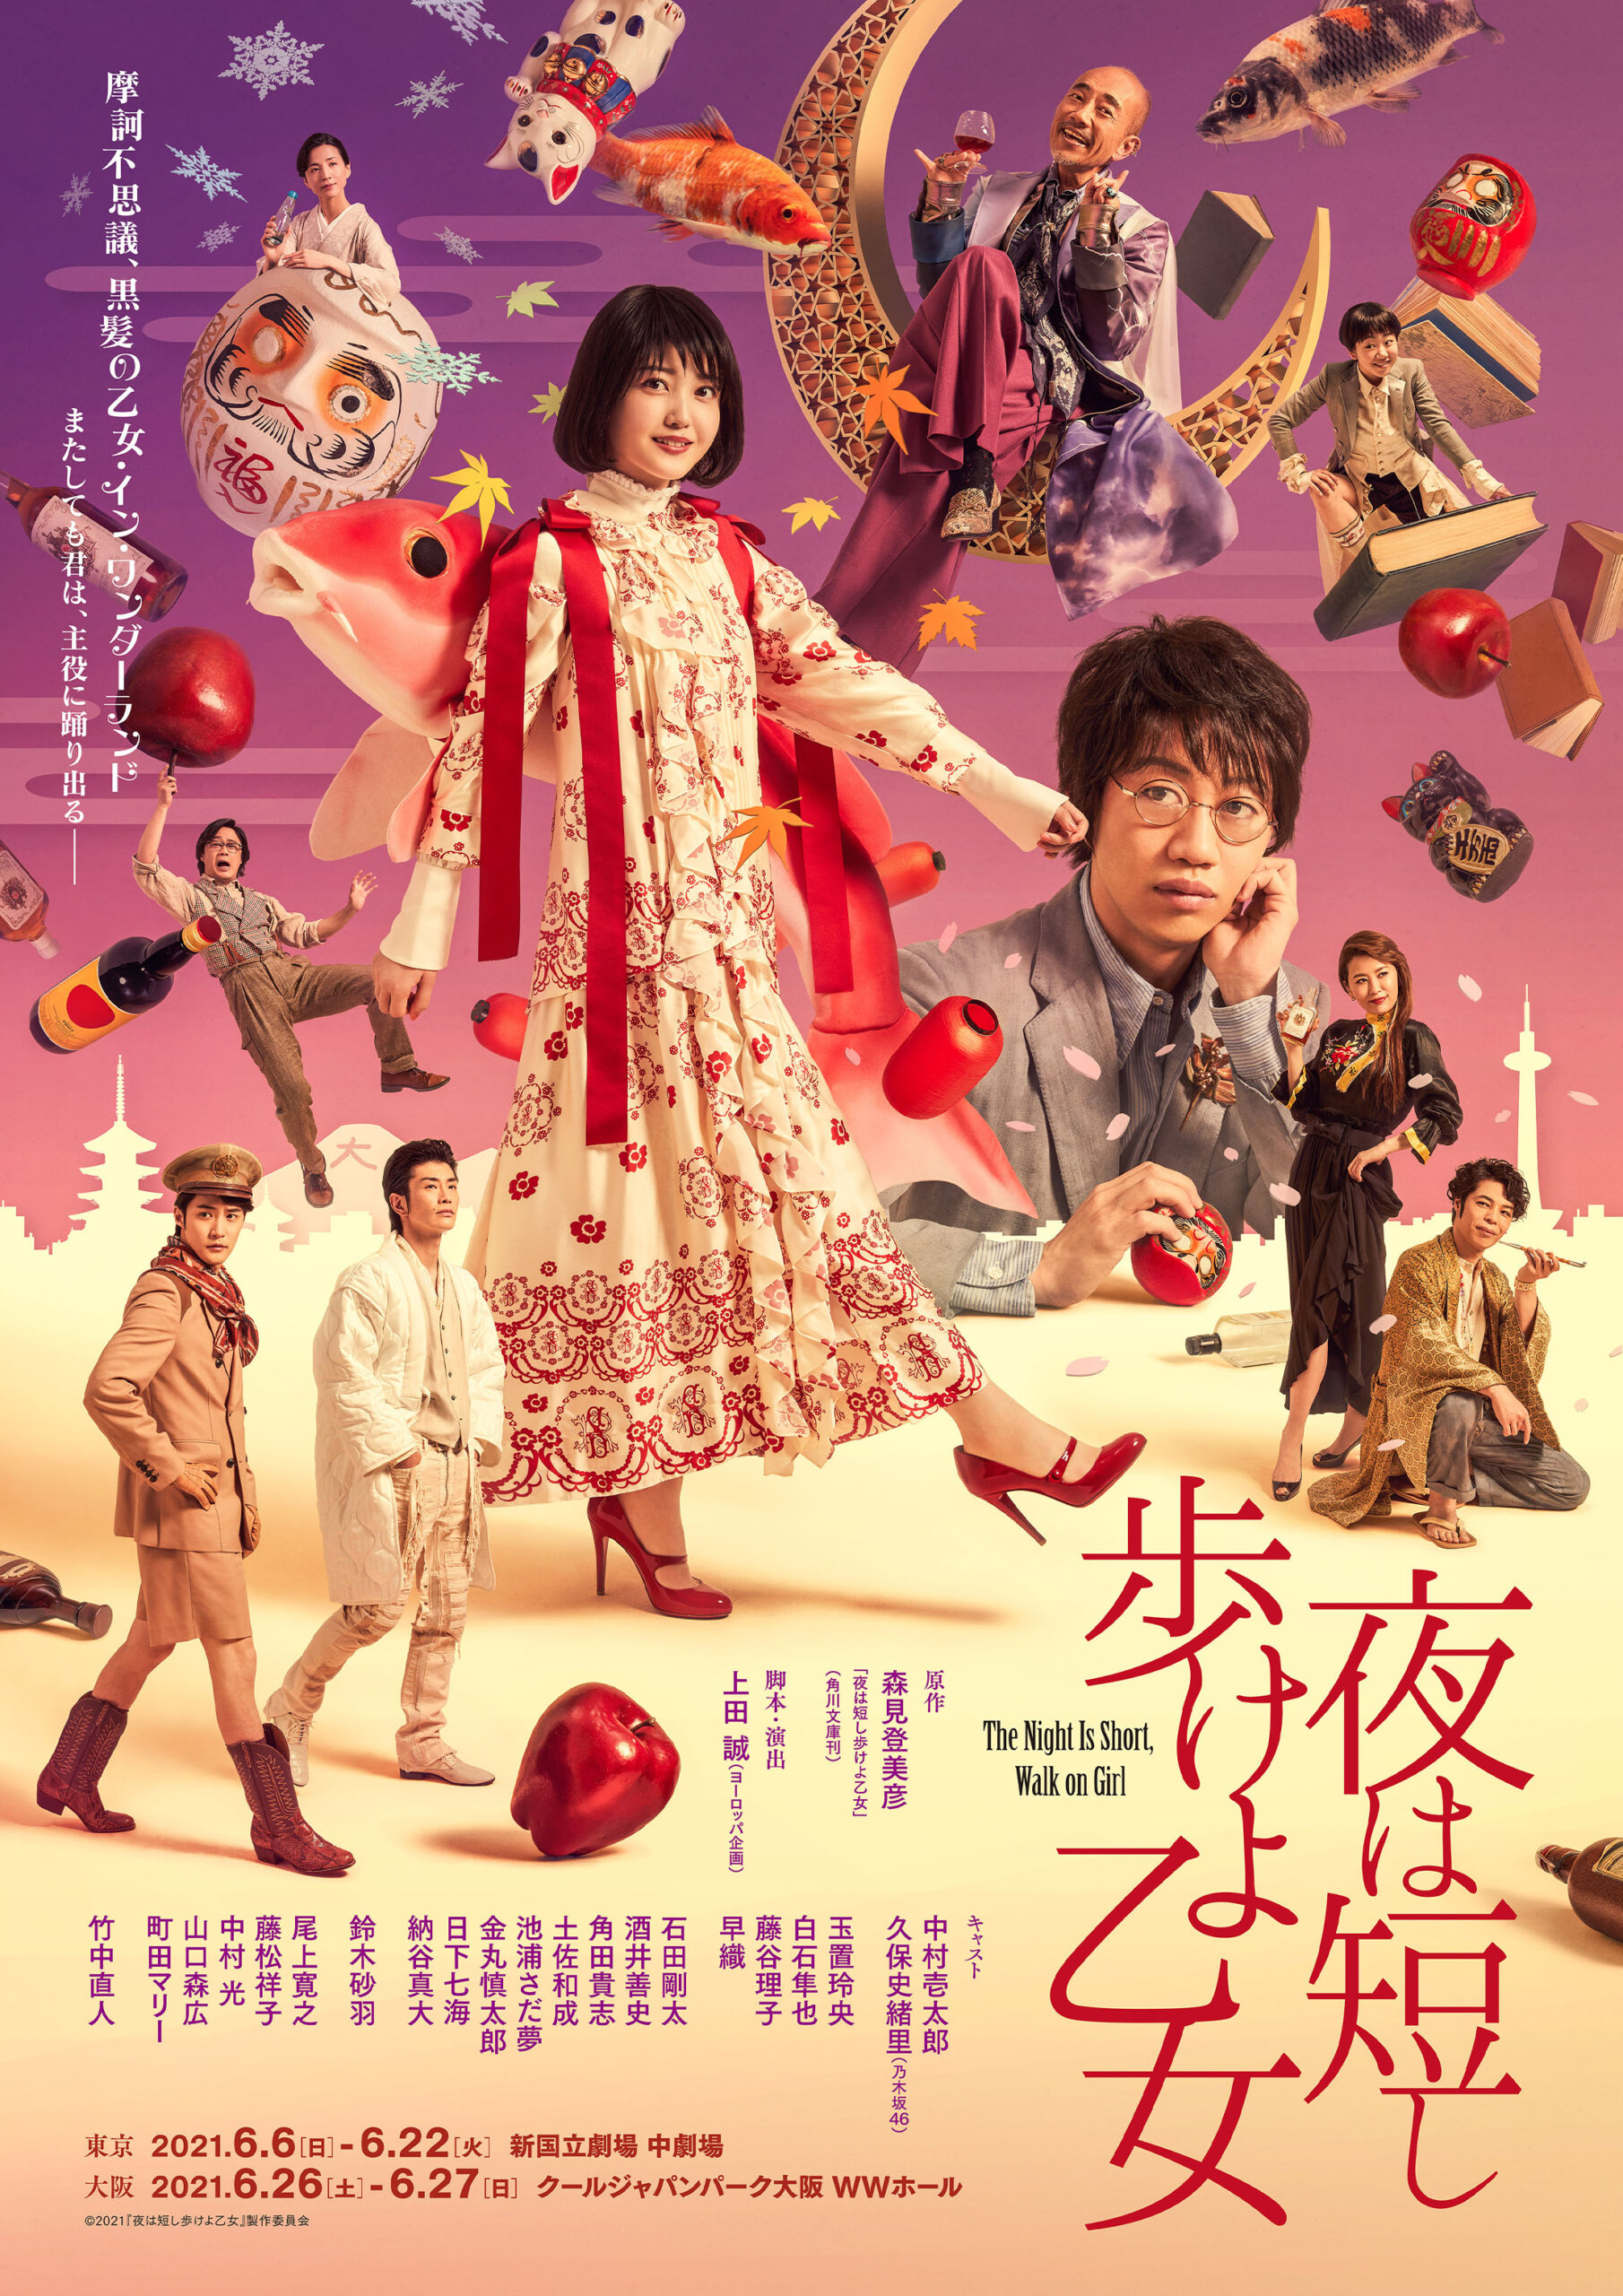 舞台「夜は短し歩けよ乙女」Blu-rayBOX(初回限定版) - DVD/ブルーレイ